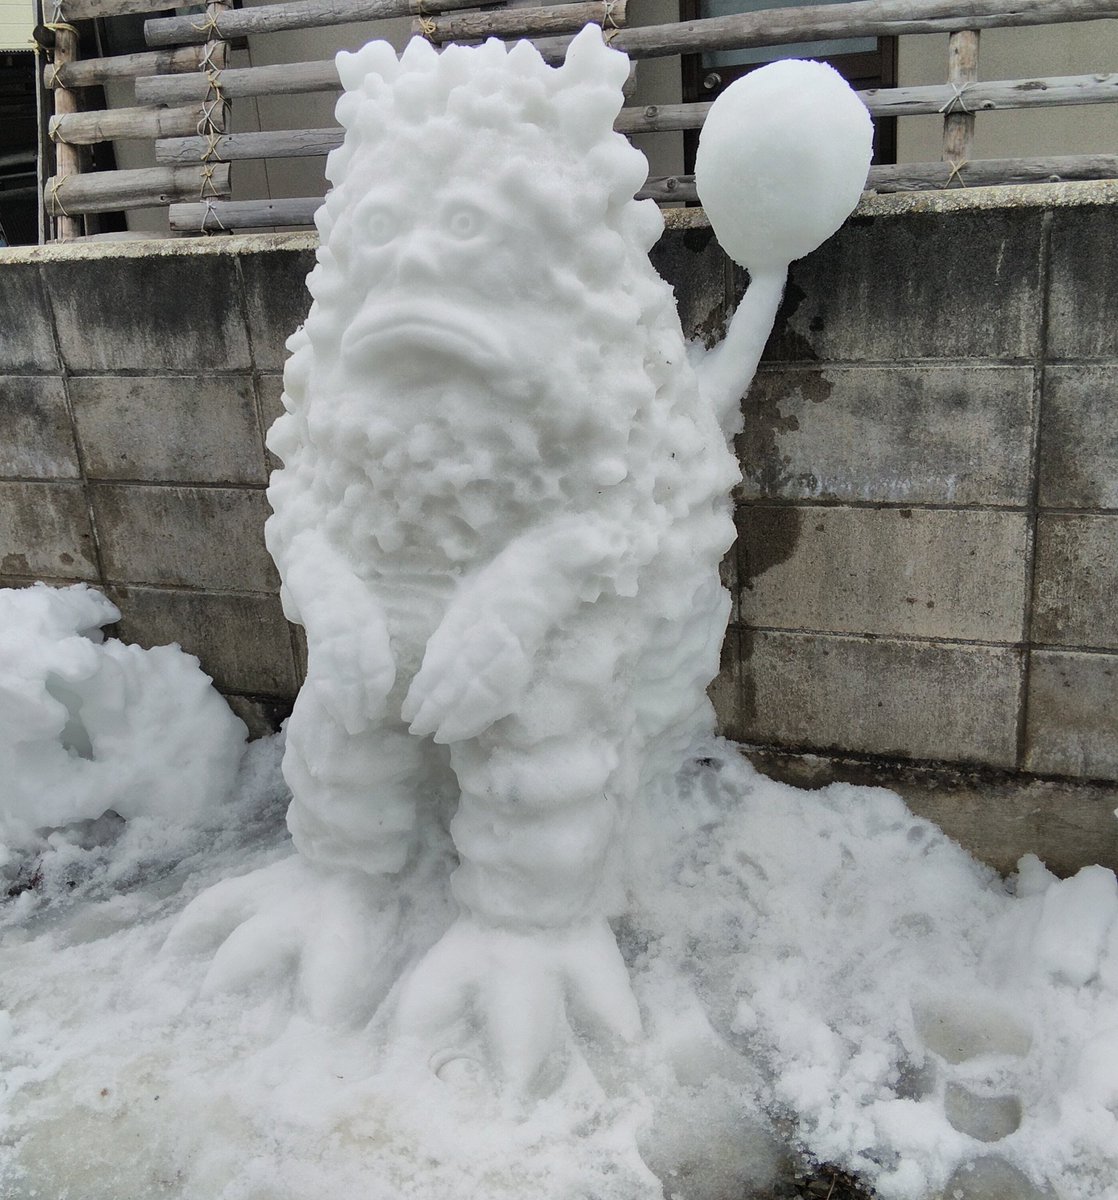 怪獣無法地帯
#ウルトラマン #ピグモン #怪獣 #pigmon #雪像 #一人雪祭り #雪だるま職人 #雪だるま #snowart #snowman #snowsculpture #snowcarving